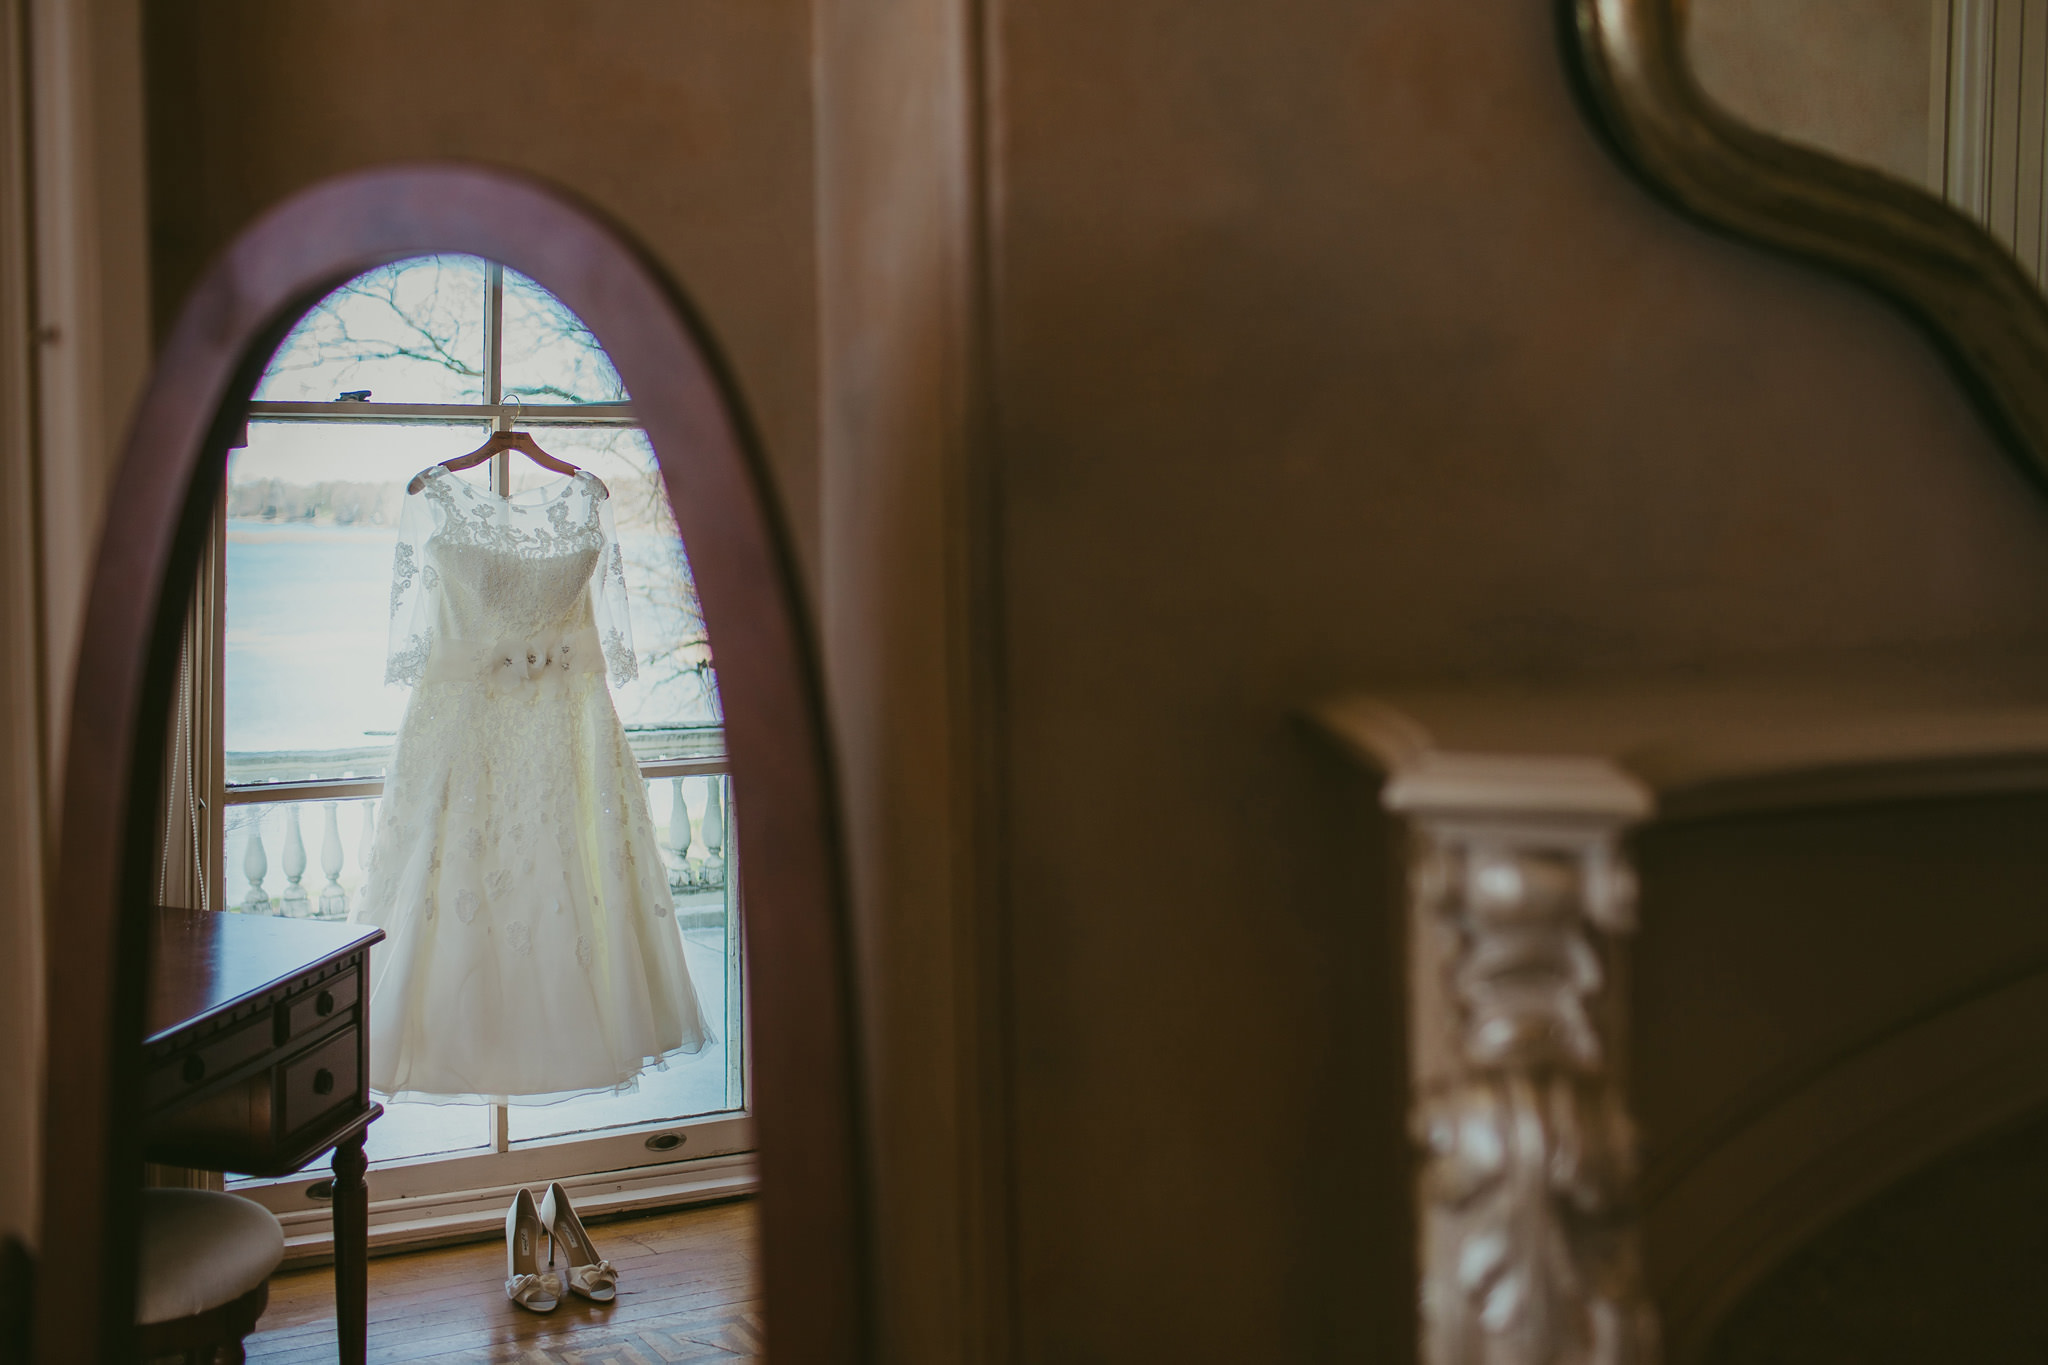 Lauren's wedding dress hangs beautifully in the window of Glen Foerd on the Deleware